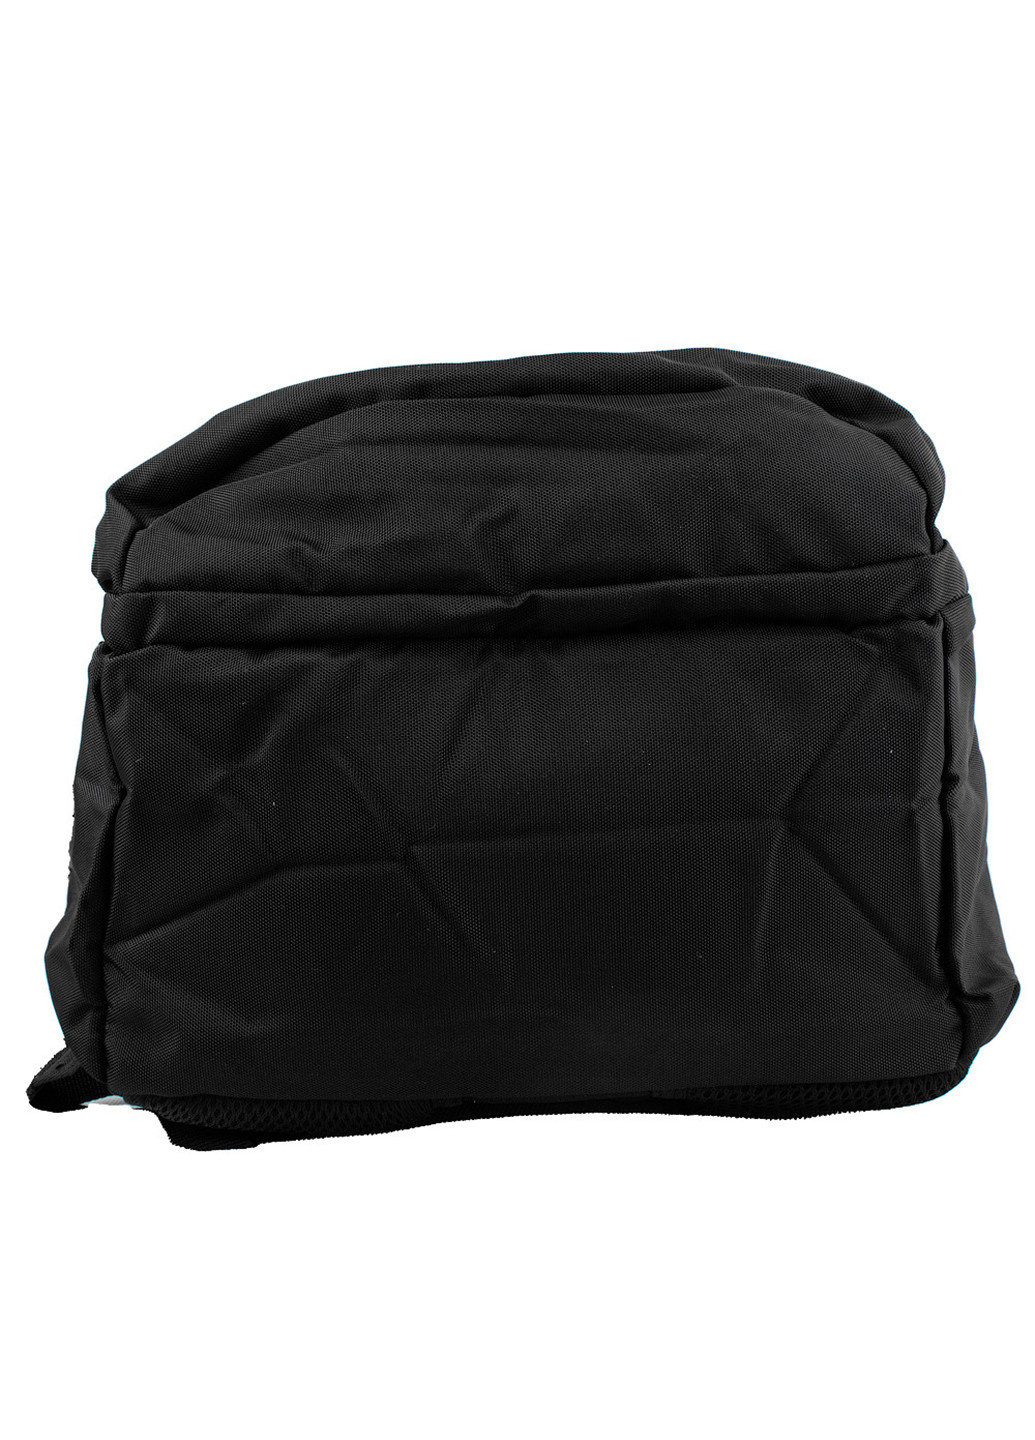 Мужской спортивный рюкзак 29х41,5х20 см Valiria Fashion (253032075)